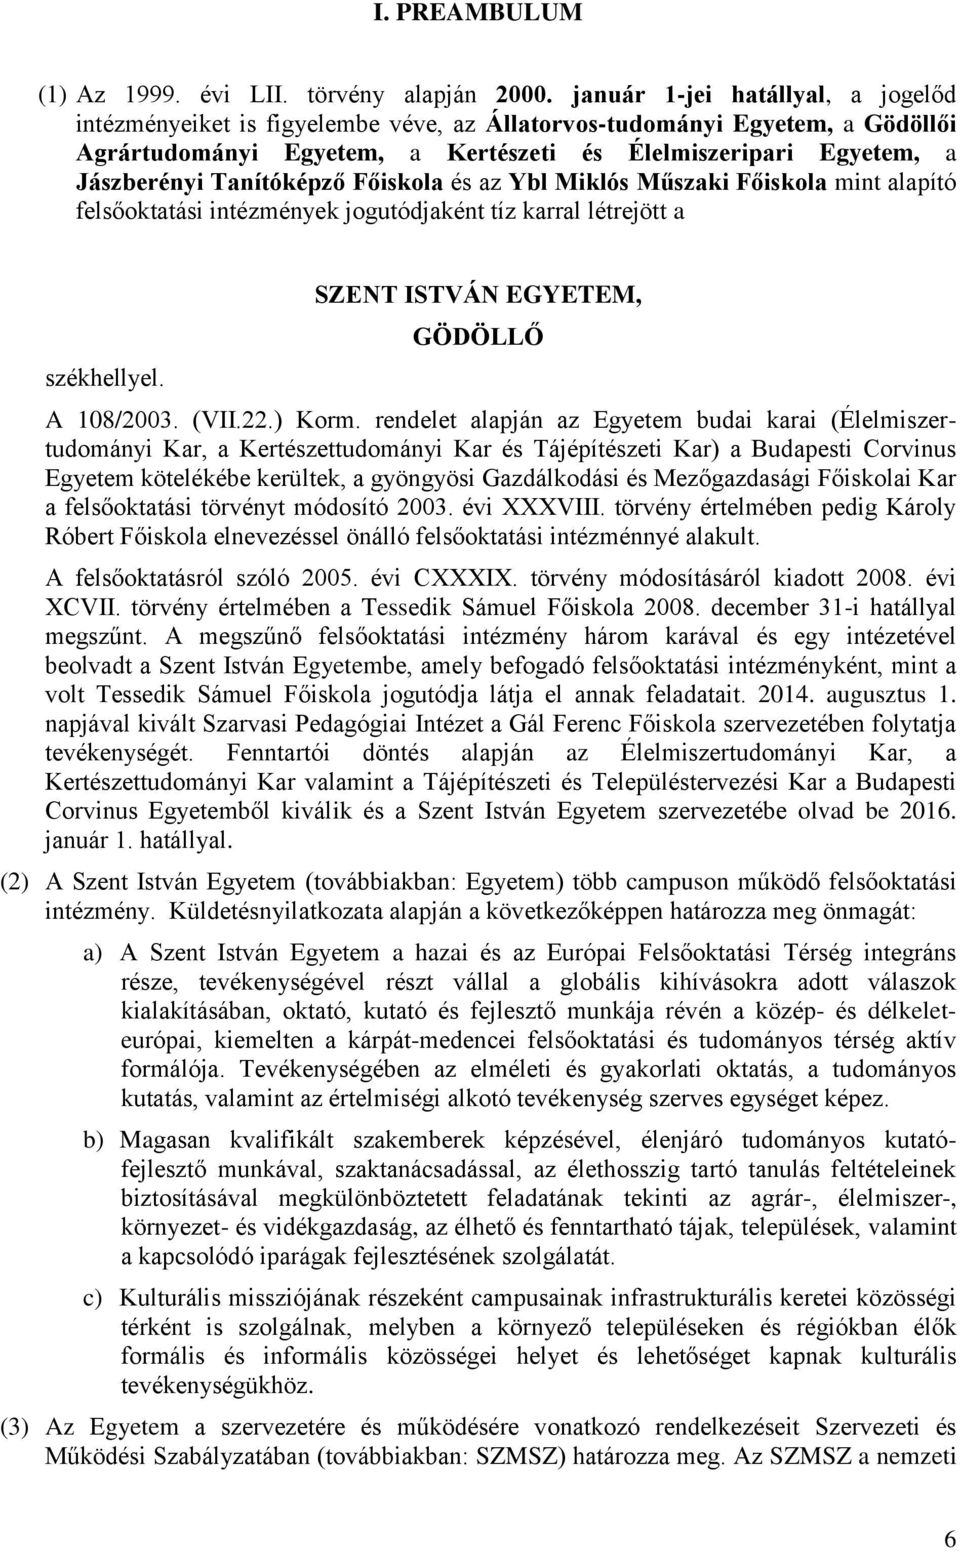 Szent István Egyetem Gödöllő - PDF Free Download